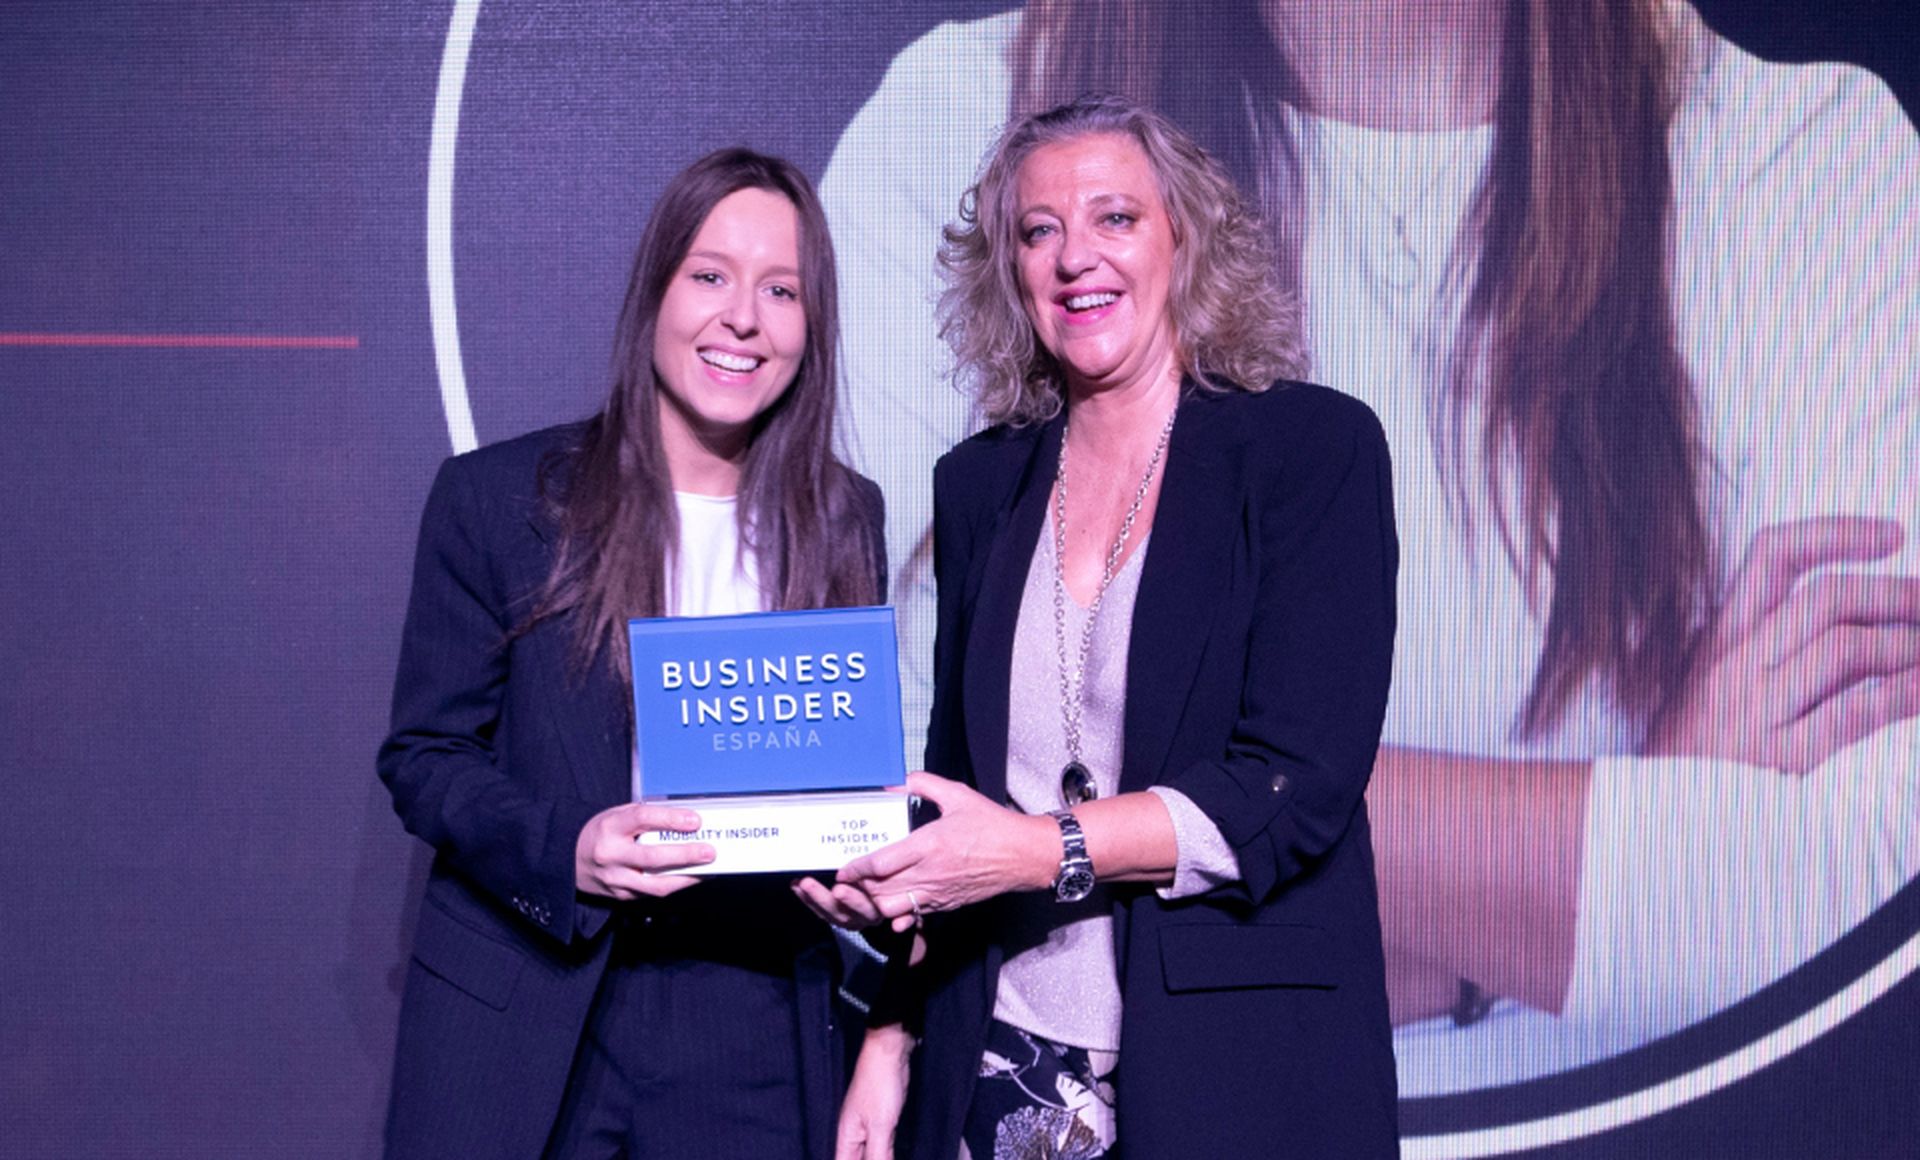 De izquierda a derecha, Yaiza Canosa, fundadora y consejera delegada de GOI, recibe el premio Top Insider del Año en la categoría de Mobility Insider de Margarita Rodríguez, Advertising Senior Manager de Hyundai Motor España.